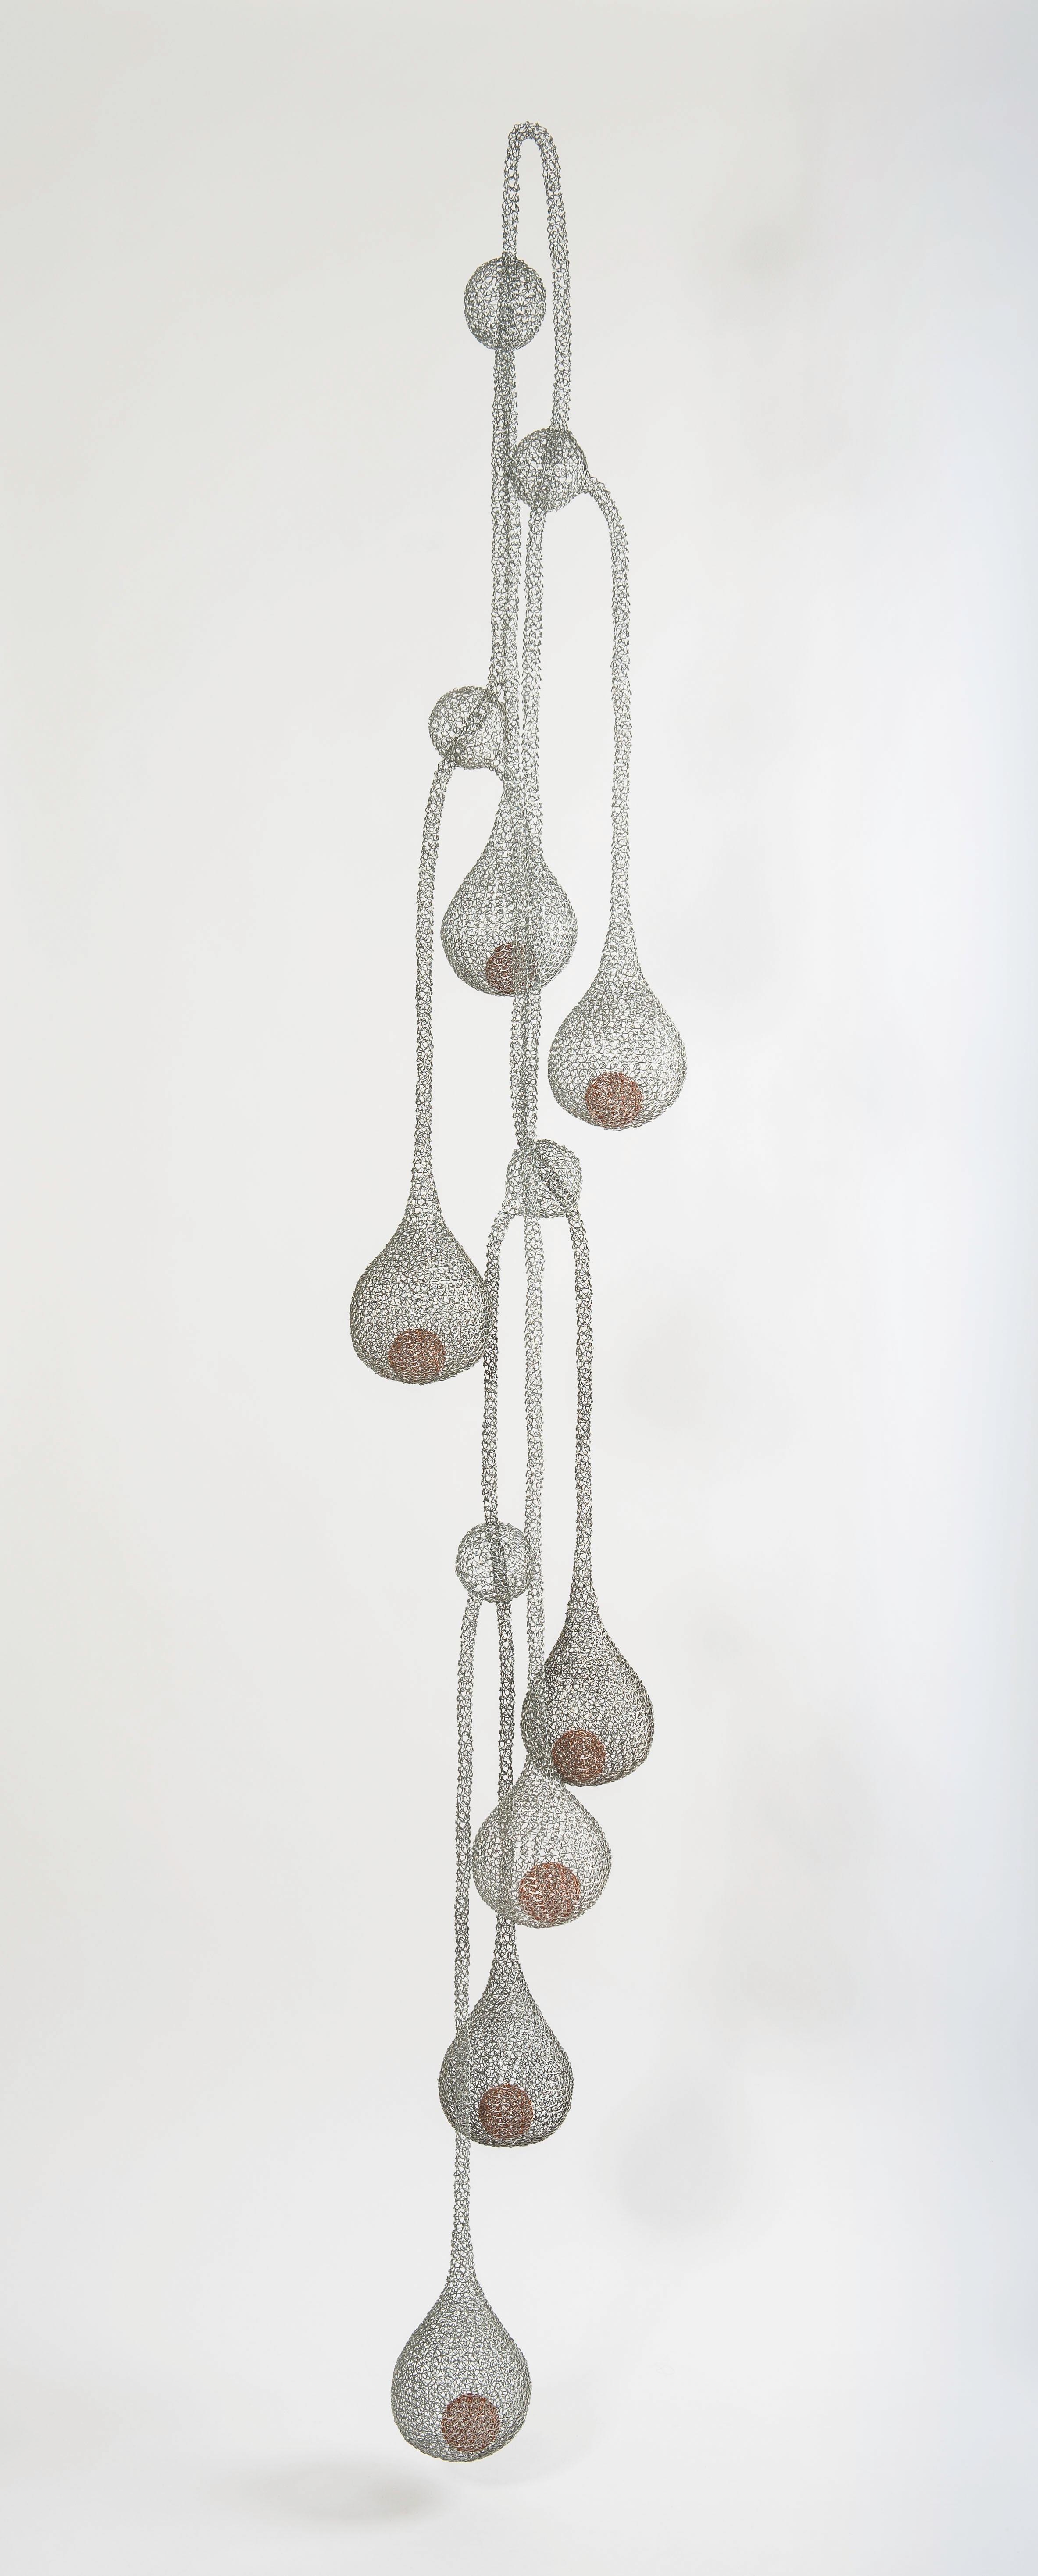 Delphine Grandvaux Figurative Sculpture - "Downpour" , Transparent Metal Wire Water Drop Figurative Pendant Mesh Sculpture